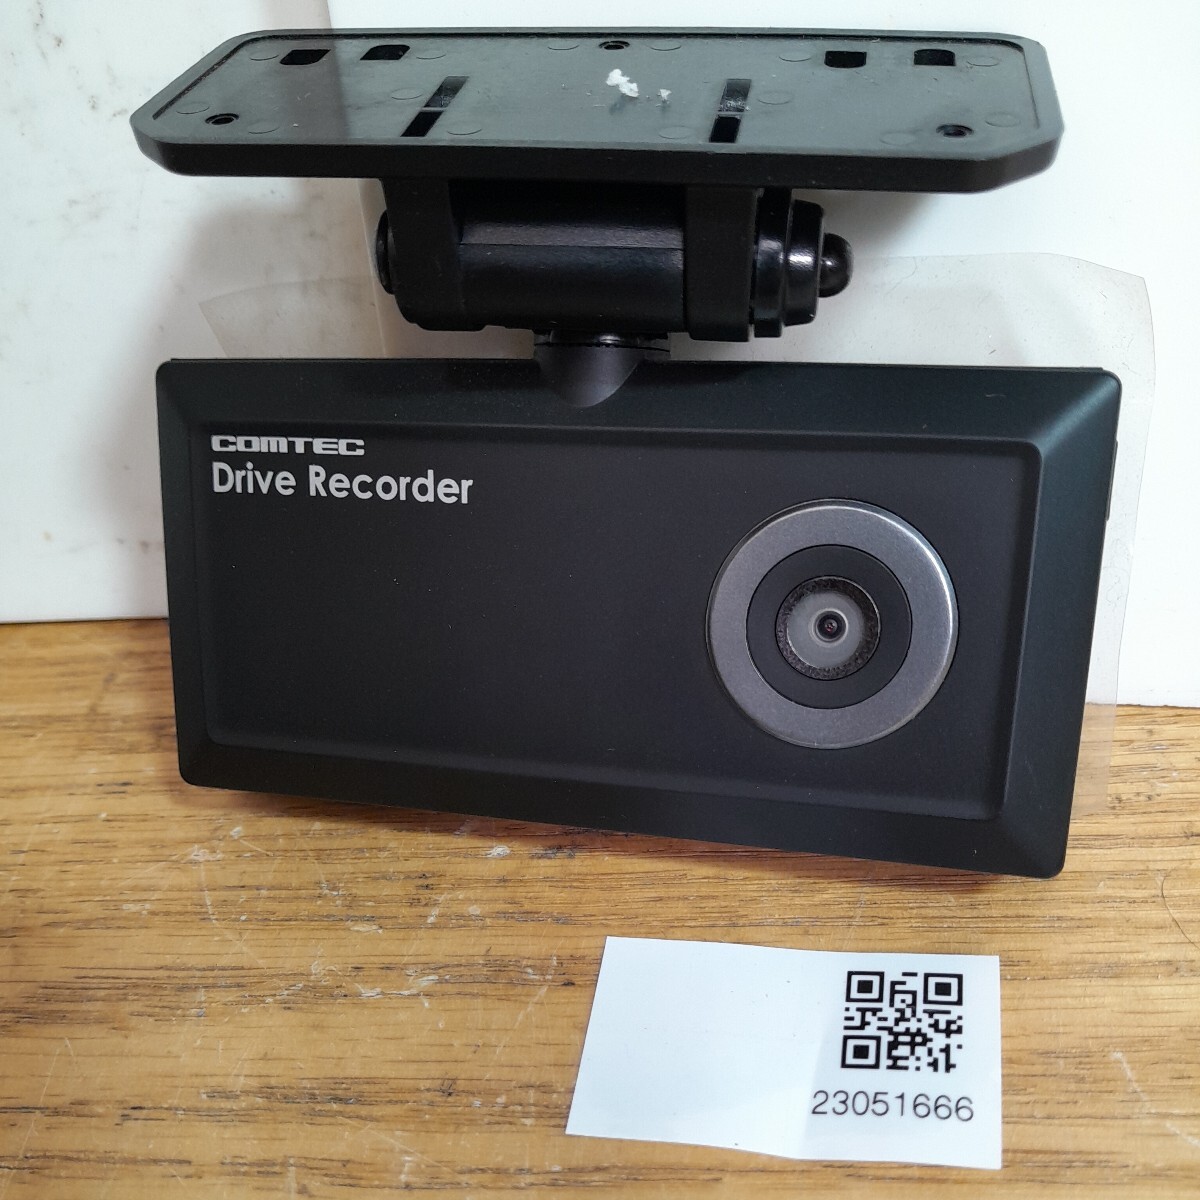  Comtec COMTEC регистратор пути (drive recorder) HDR-201G( контрольный номер :23051666)